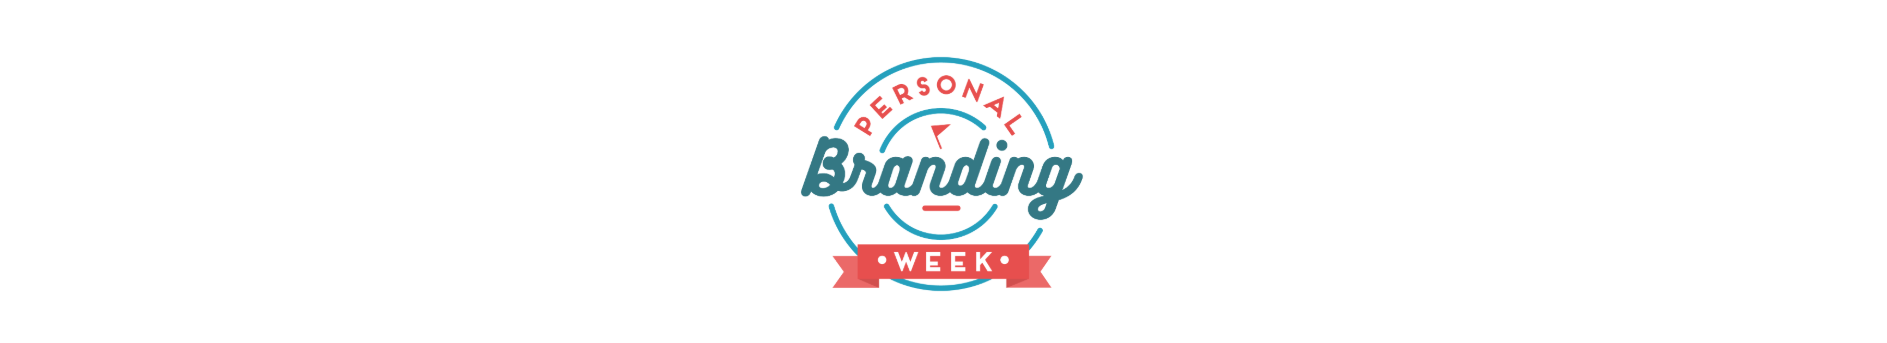 personal-branding-week